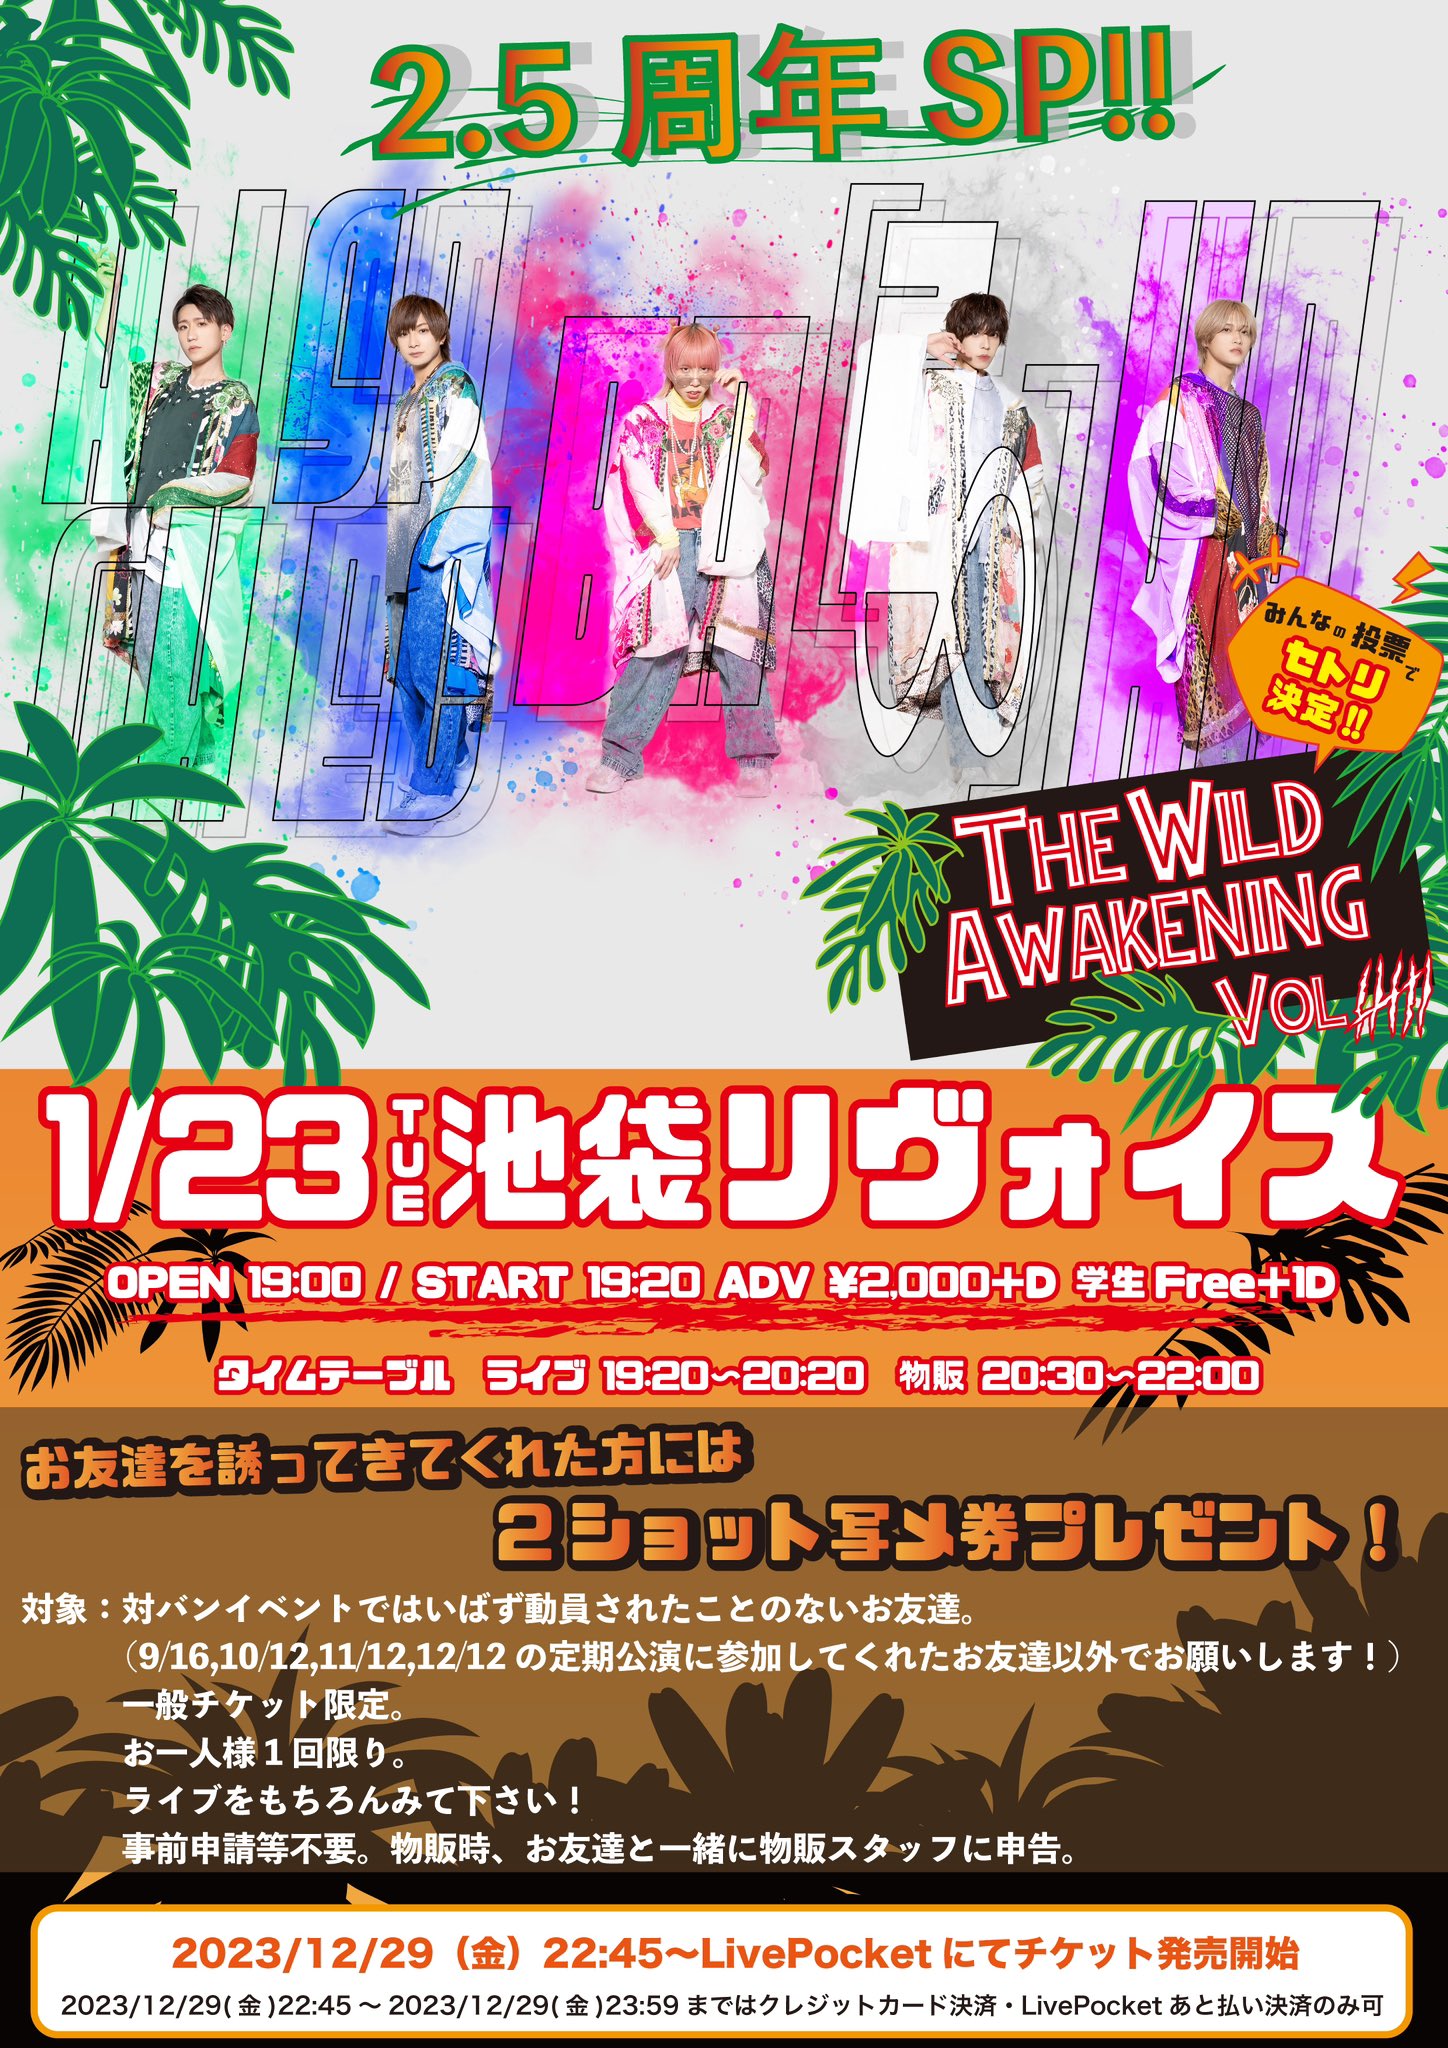 はいばず定期公演 The Wild Awakening Vol.6 〜 2.5周年SP!! 〜